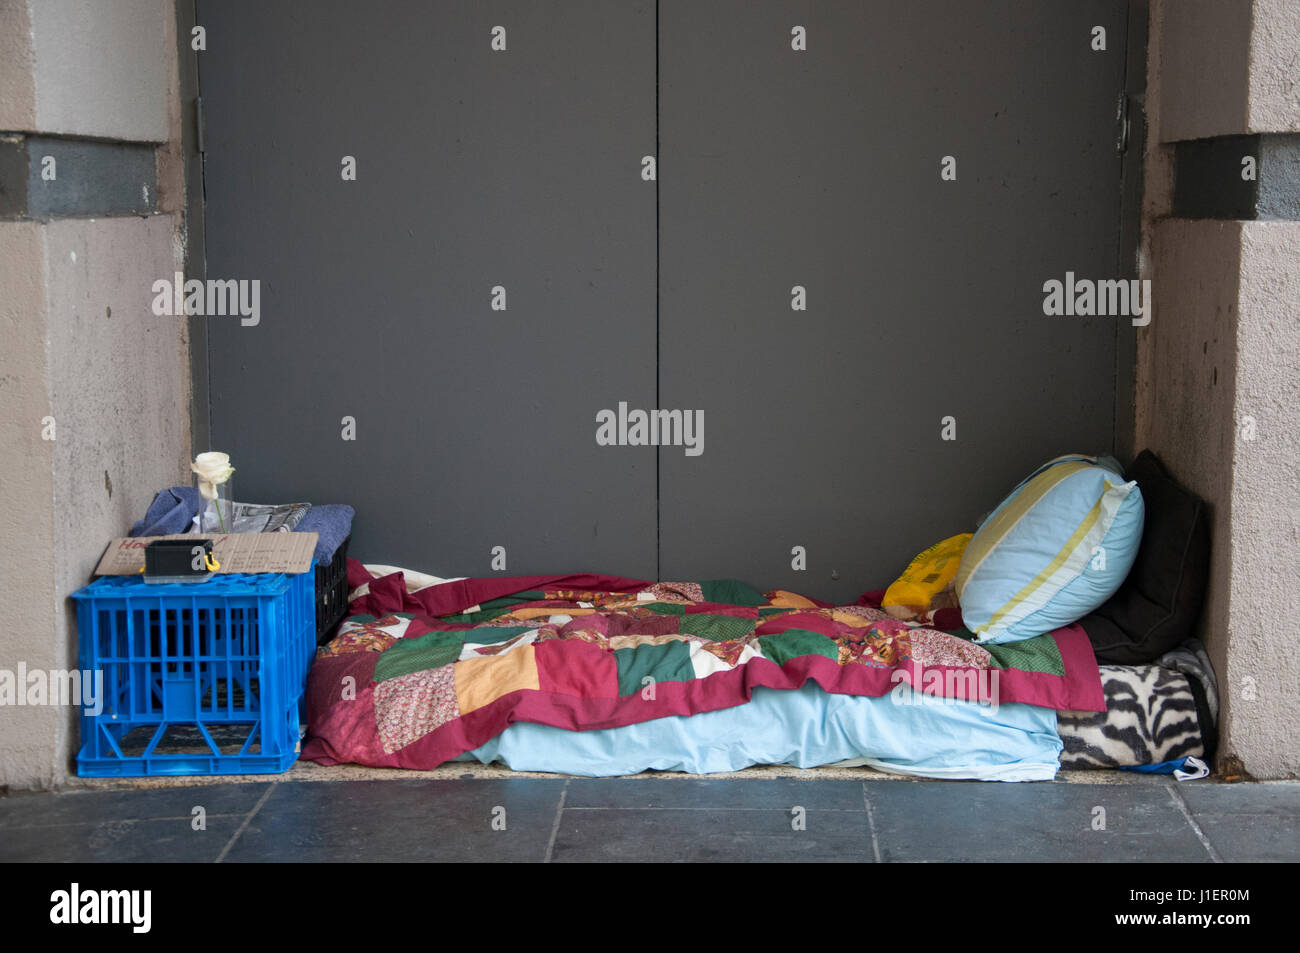 La persona senza dimora il set di biancheria da letto in un'alcova fuori da un centro città Street, Melbourne, Australia Foto Stock